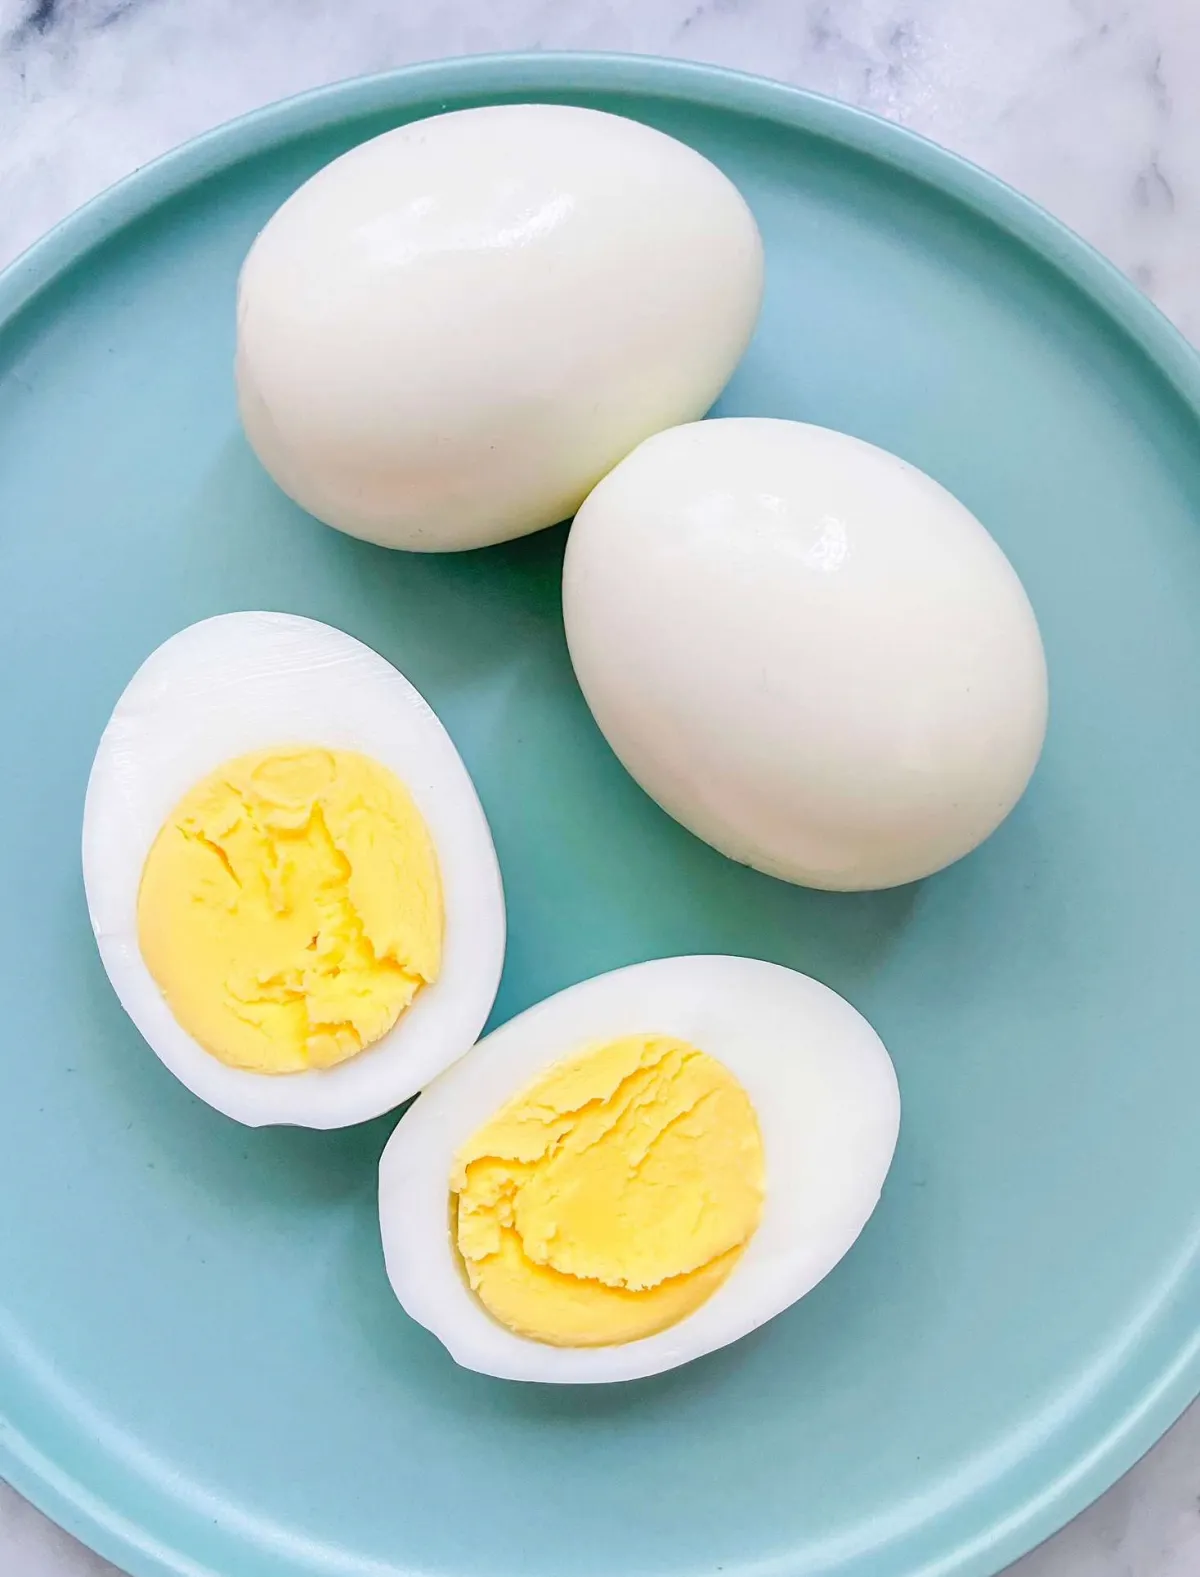 gekochte eier nicht einfrieren eiweiß gummiartige struktur